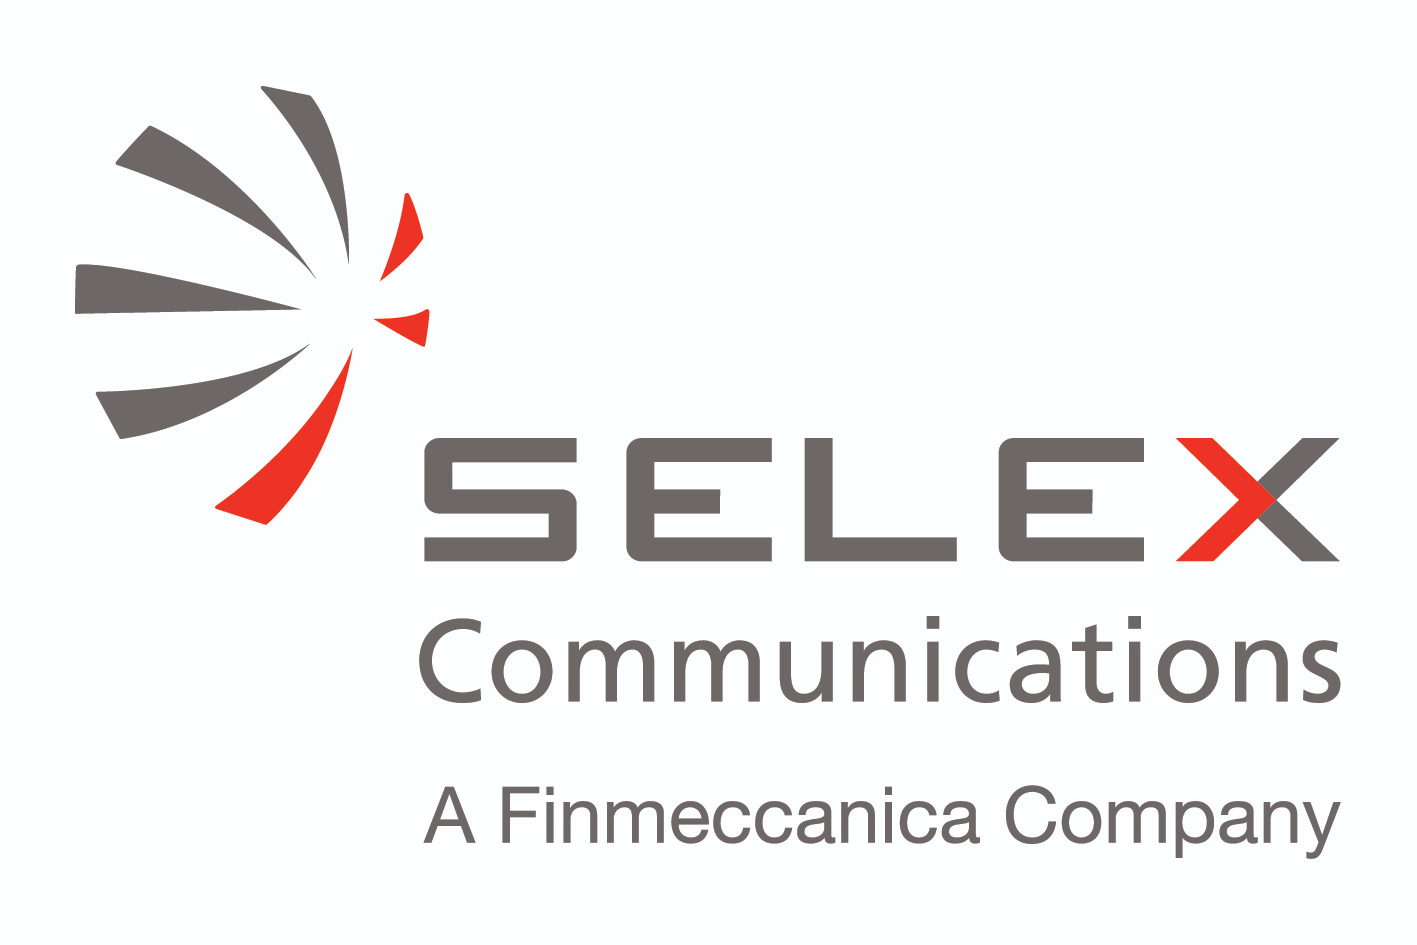 Selex Communications